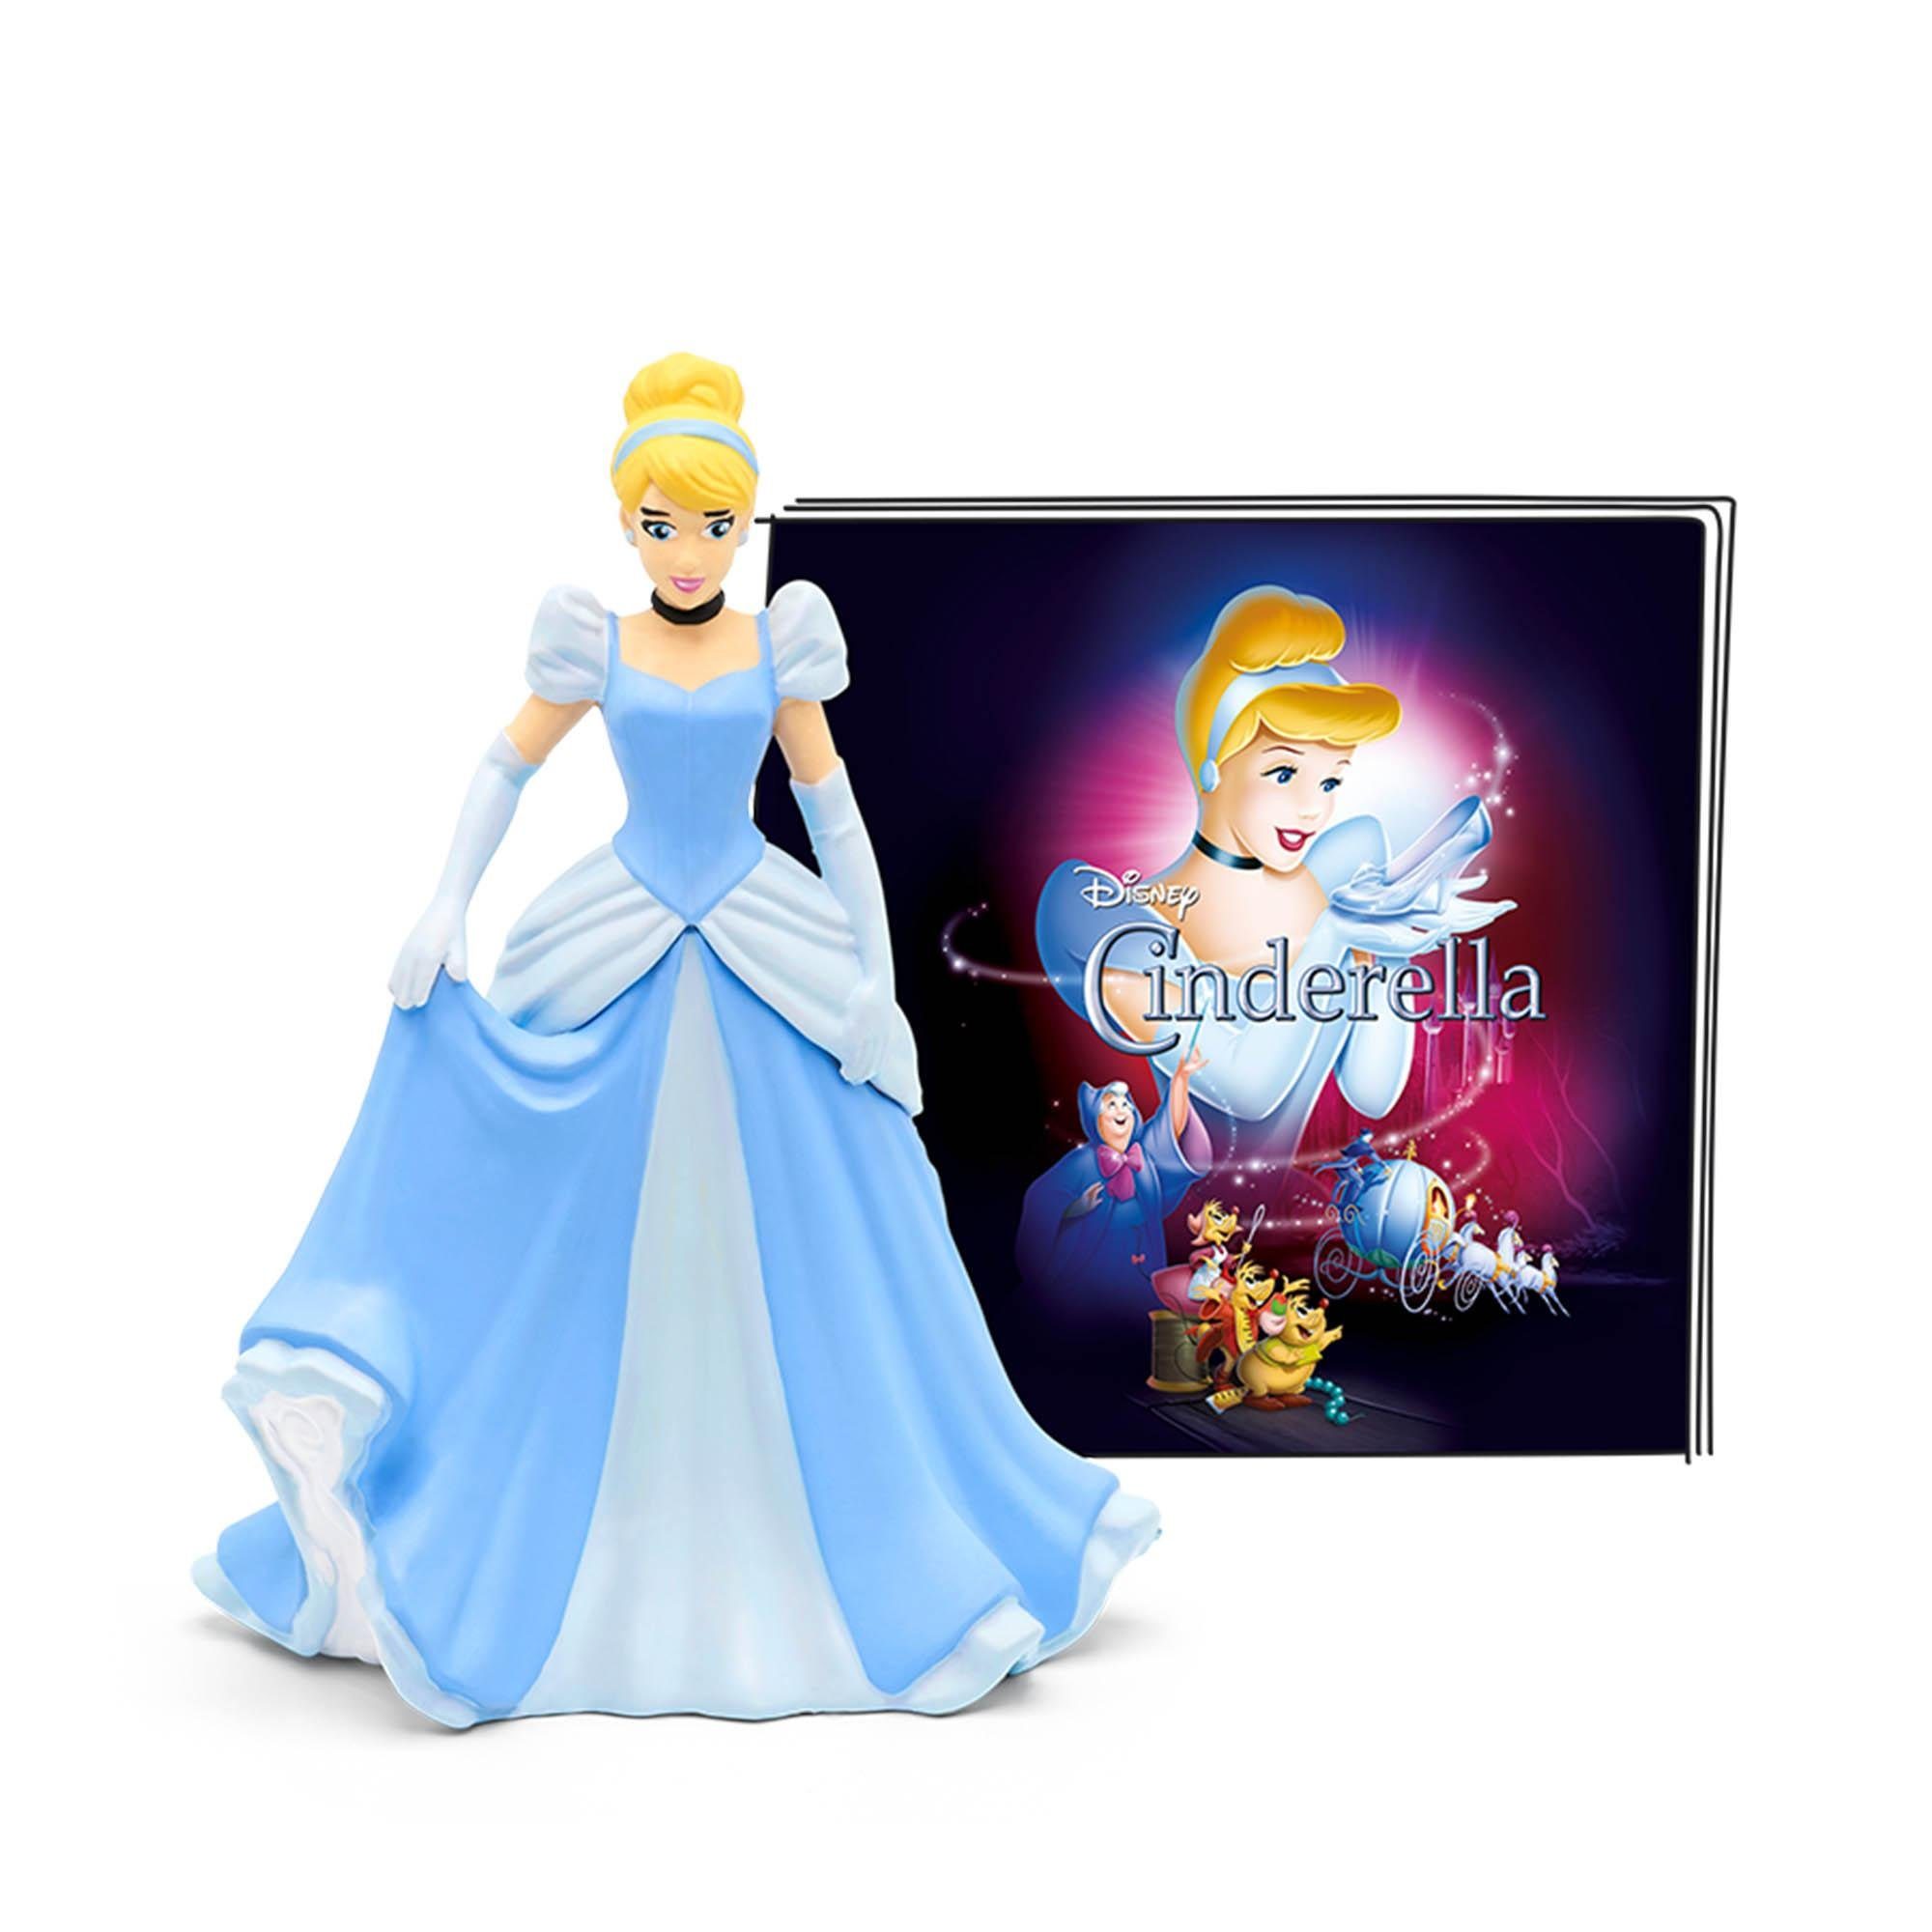 tonies Hörspielfigur Disney - Cinderella, Ab 4 Jahren